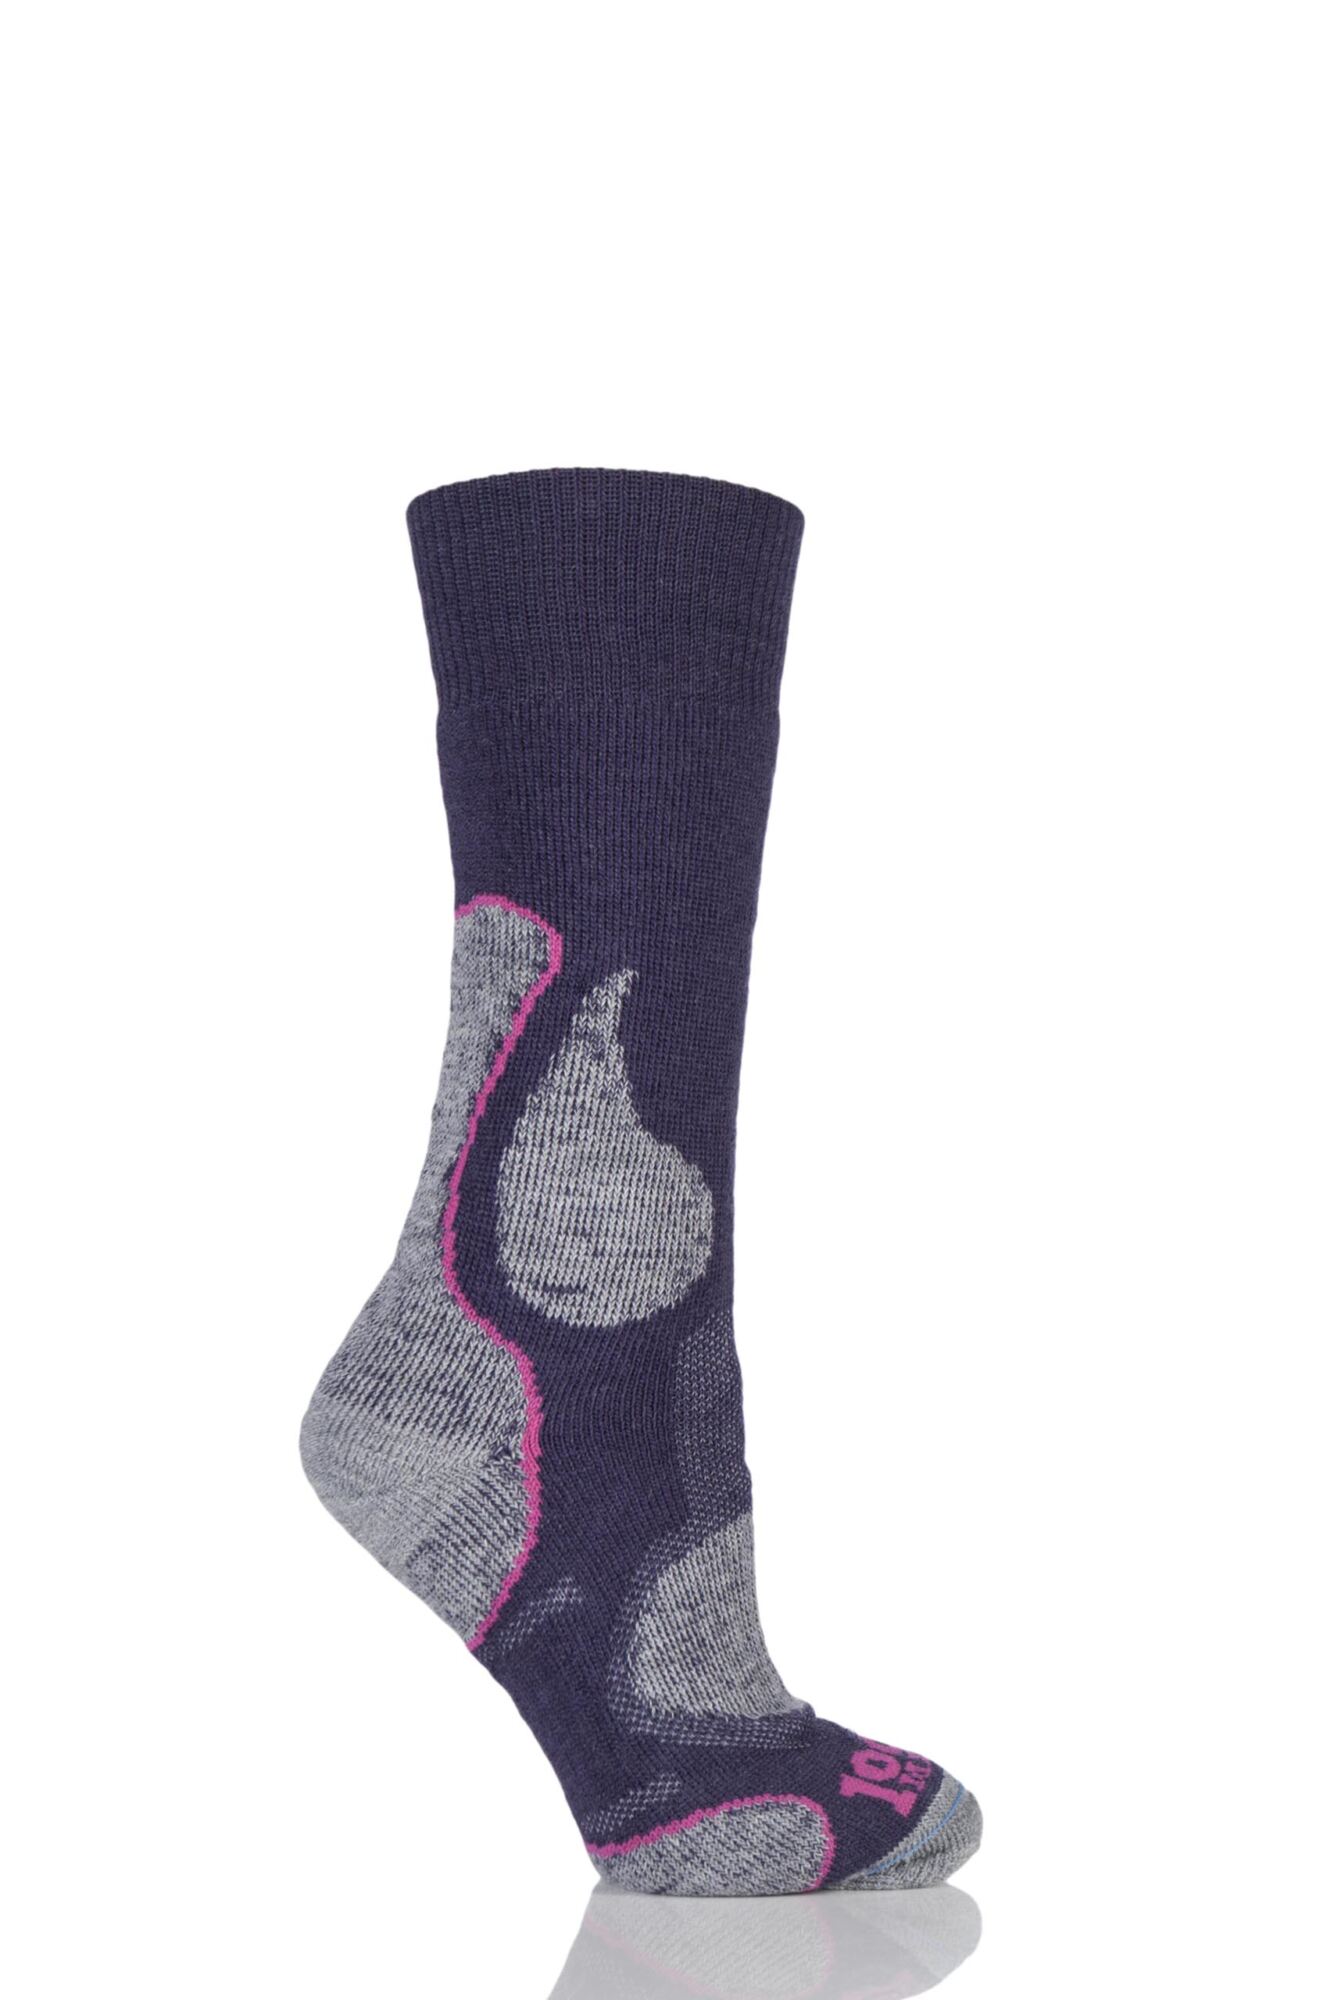 1 Pair 3 Seasons Merino Wool Walking Socks Ladies - 1000 Mile